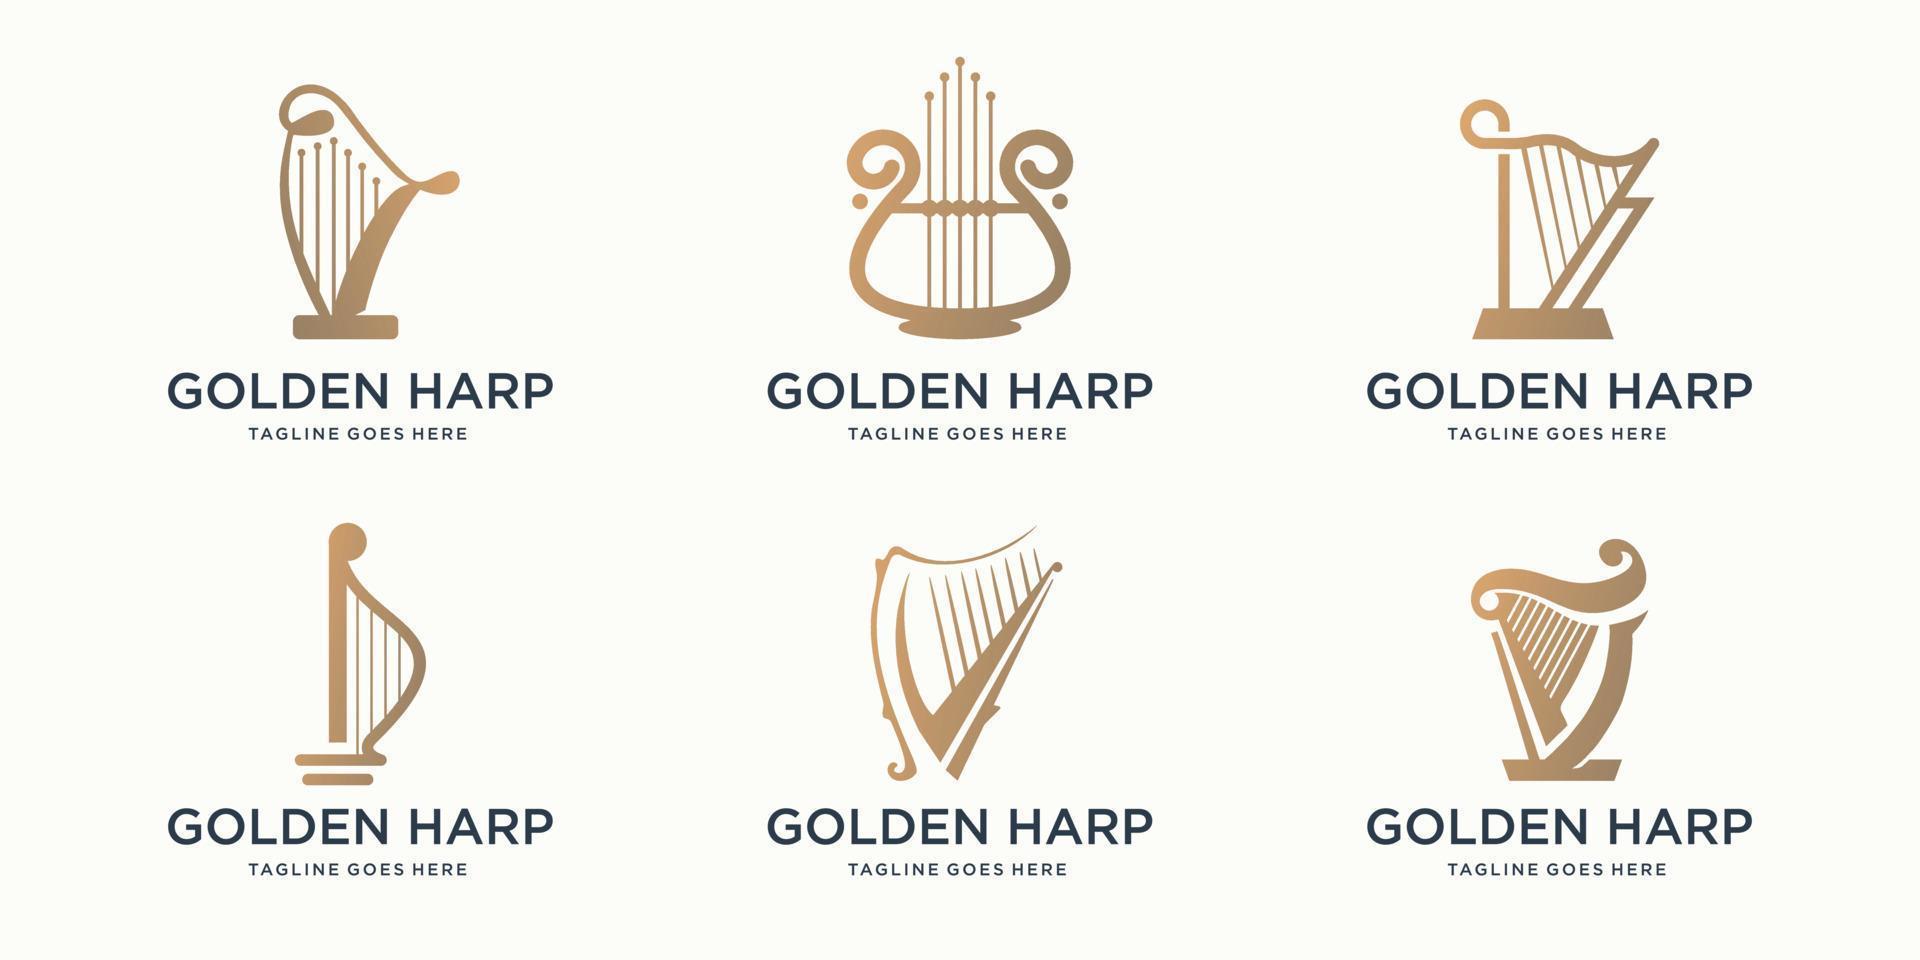 conjunto de colección de símbolos de lira de logotipo de arpa musical abstracto. inspiración en el diseño del logo del arpa dorada. vector